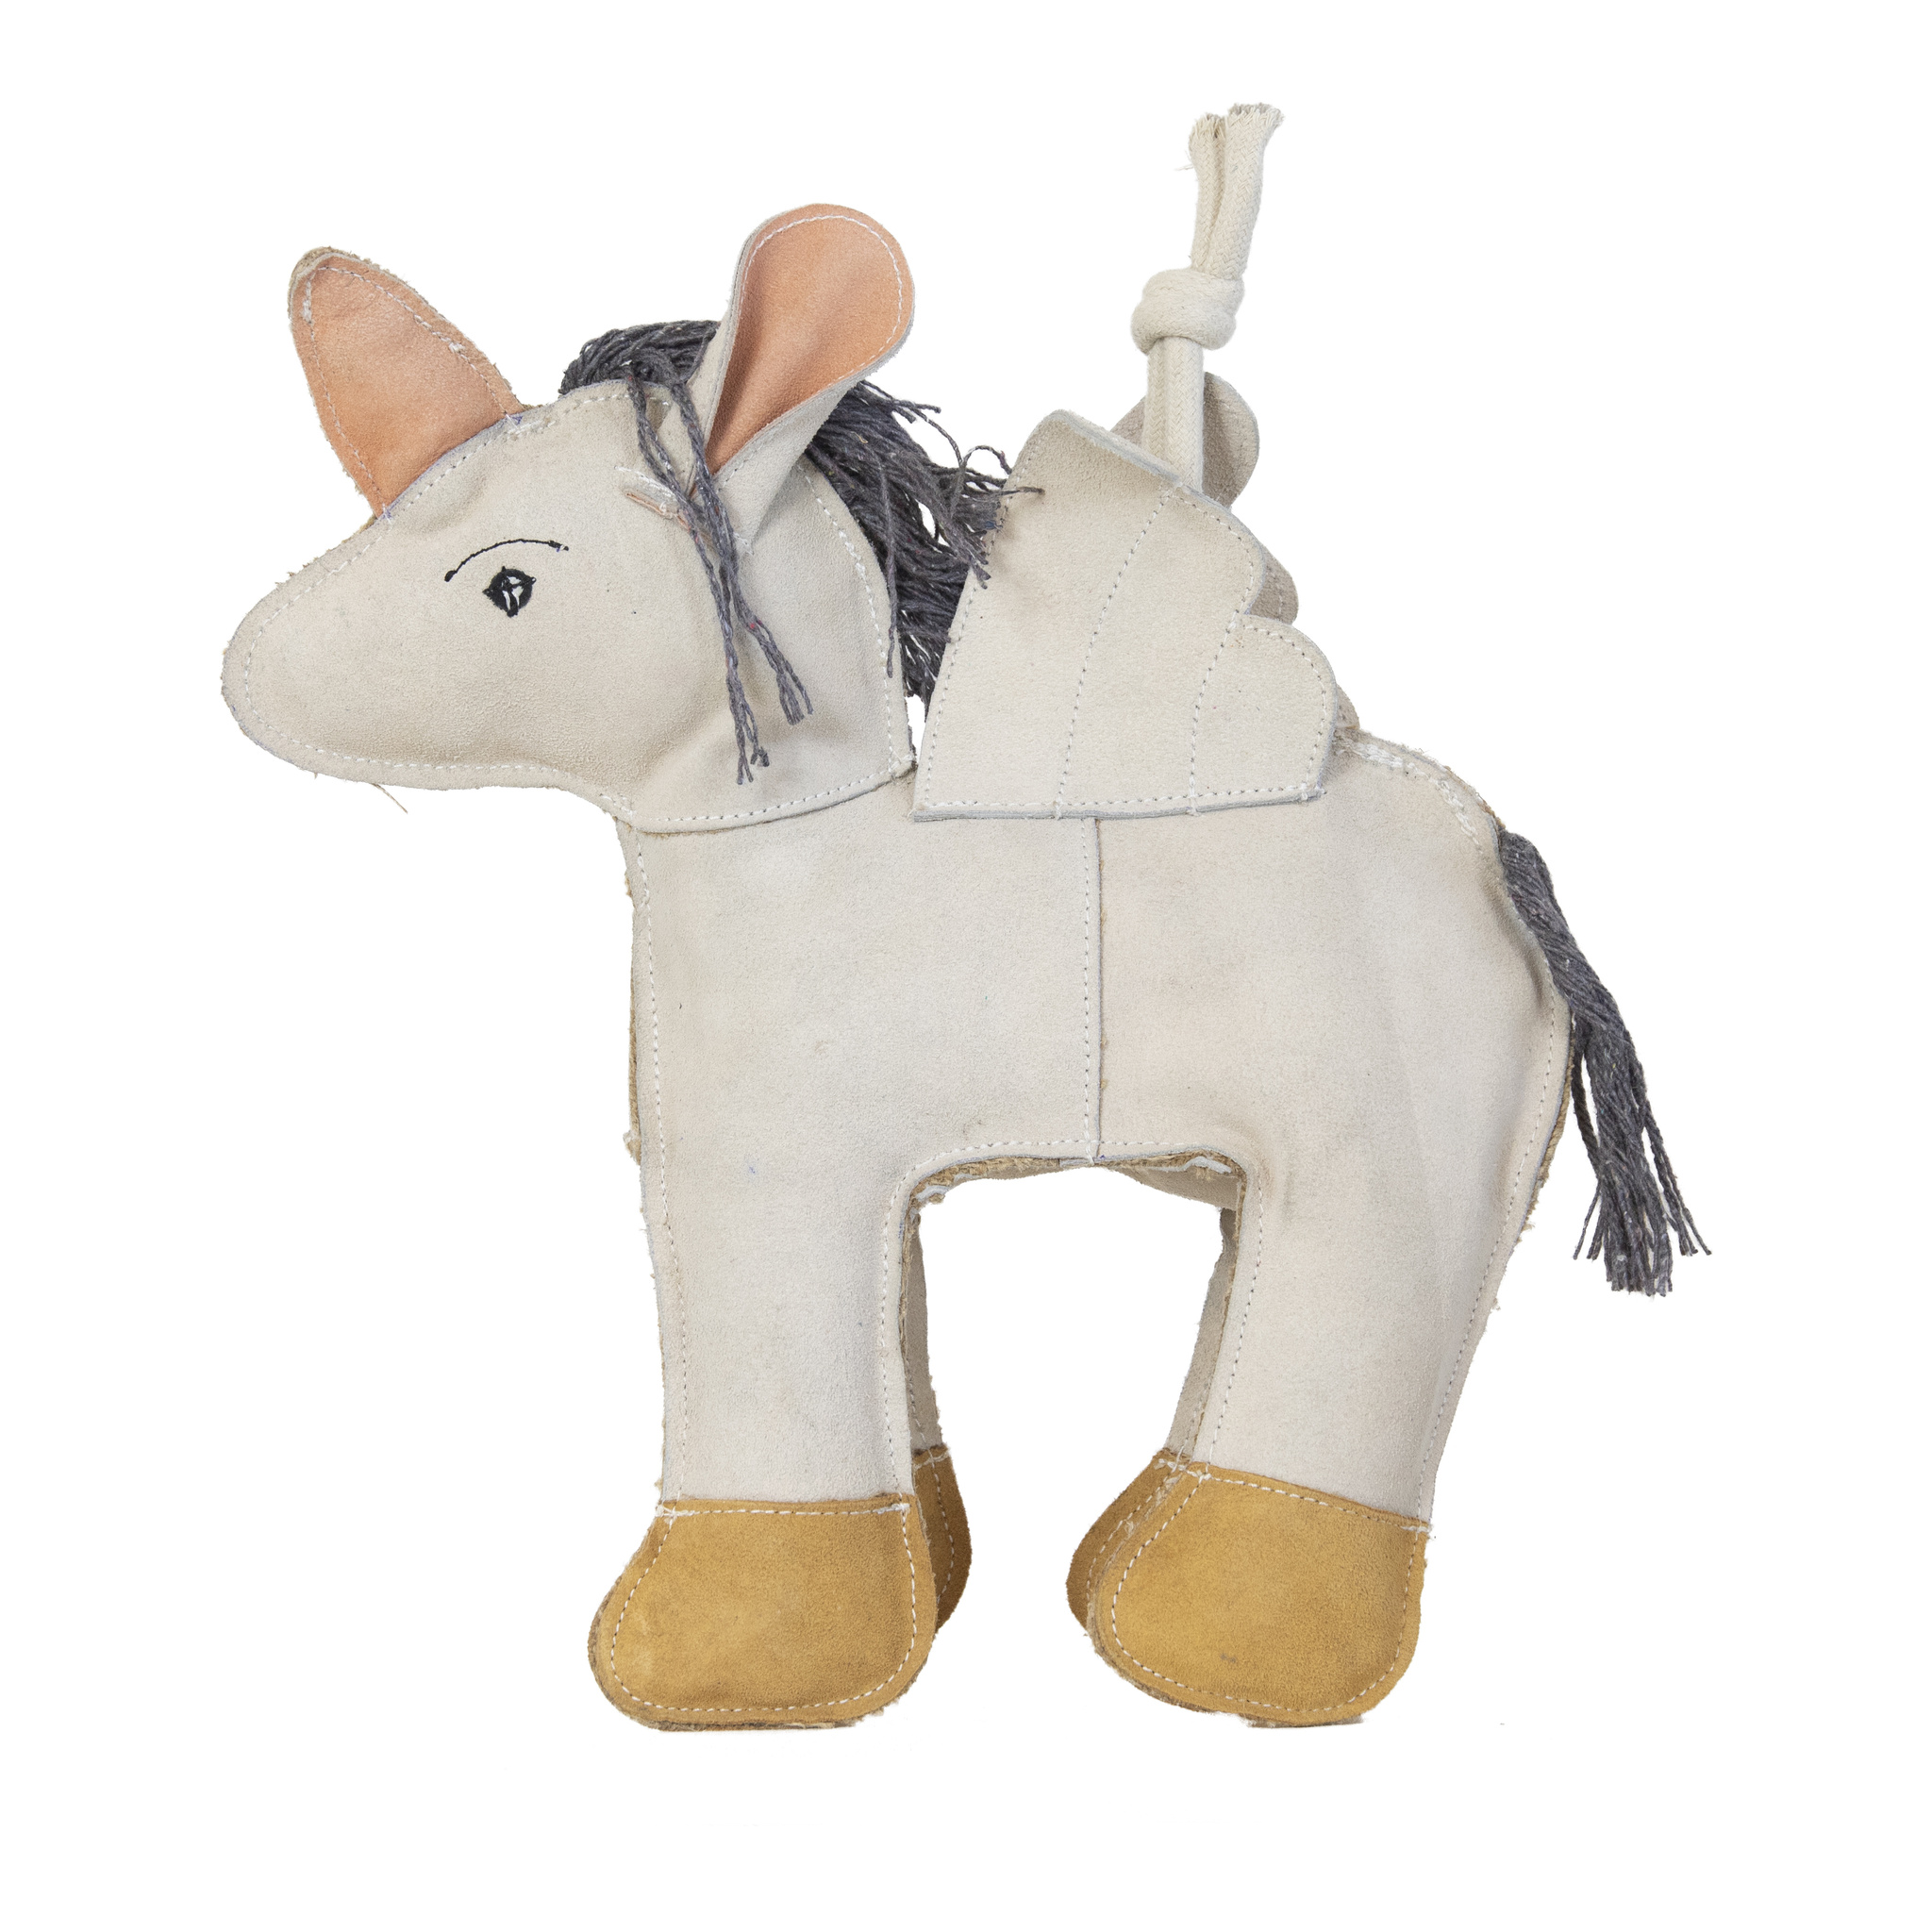 Pferdespielzeug Relax Horse Toy Unicorn Fantasie